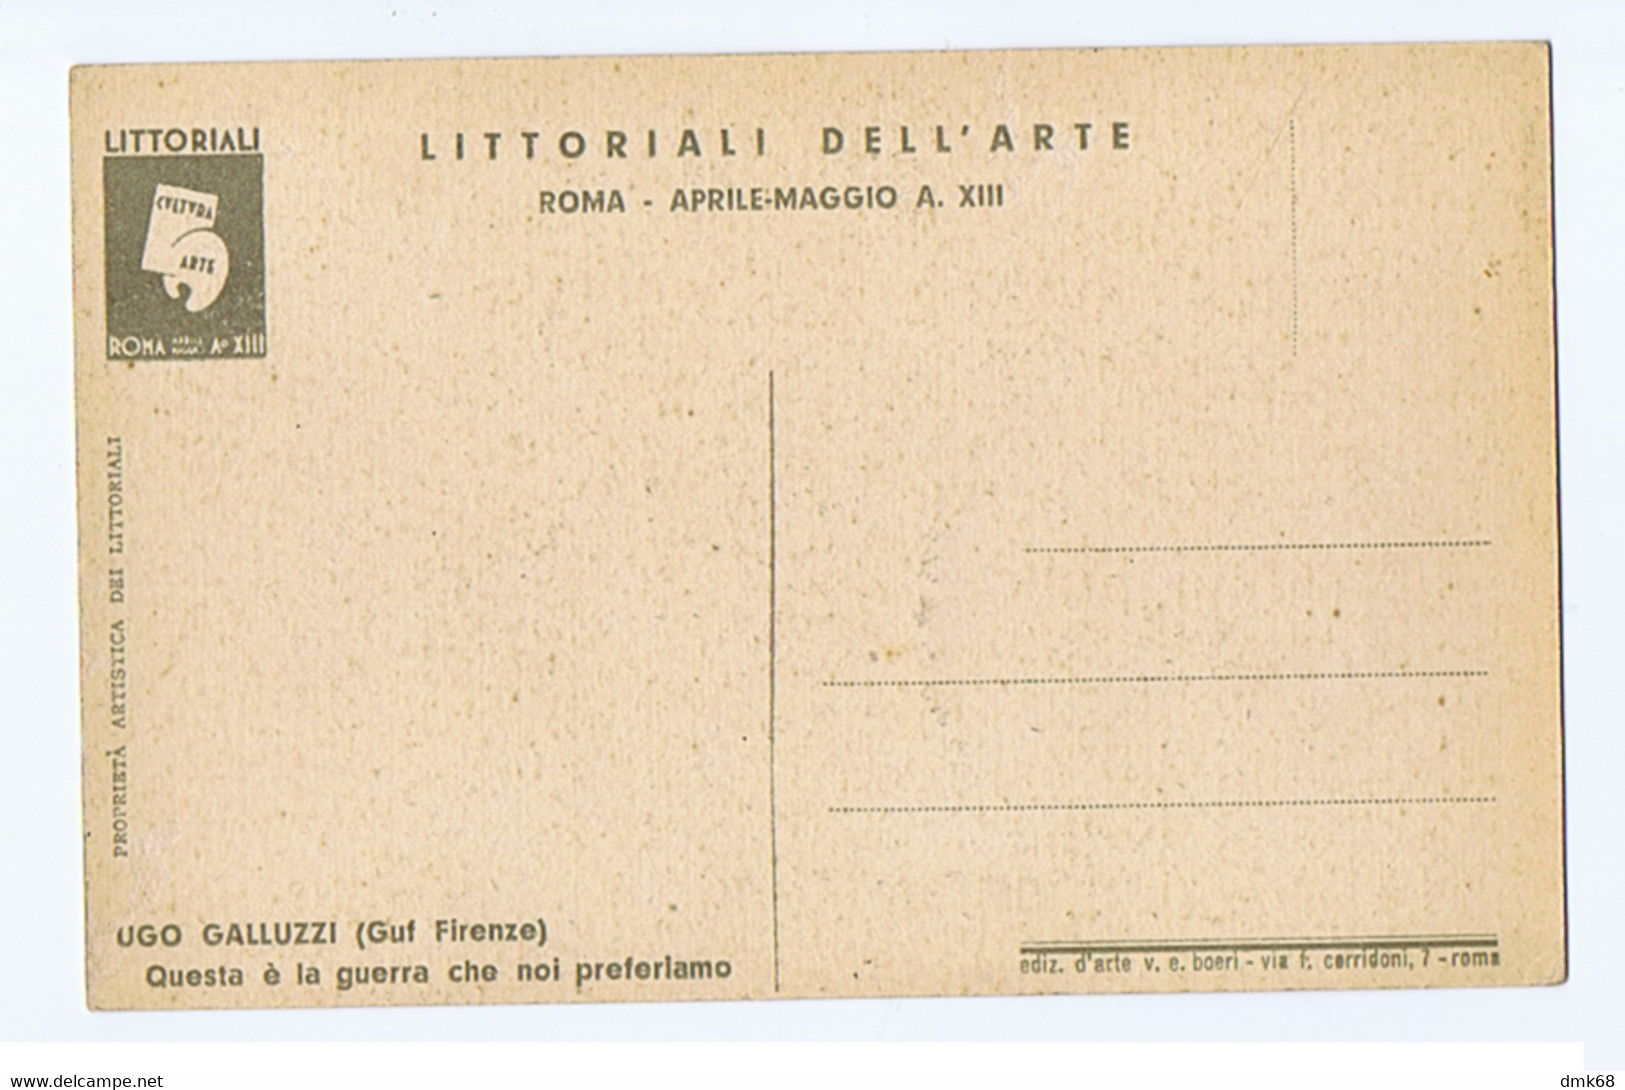 ROMA LITTORIALI DELL'ARTE - FUTURISMO - UGO GALLUZZI GUF FIRENZE - LA GUERRA CHE PREFERIAMO  - 1935 (10394) - Mostre, Esposizioni